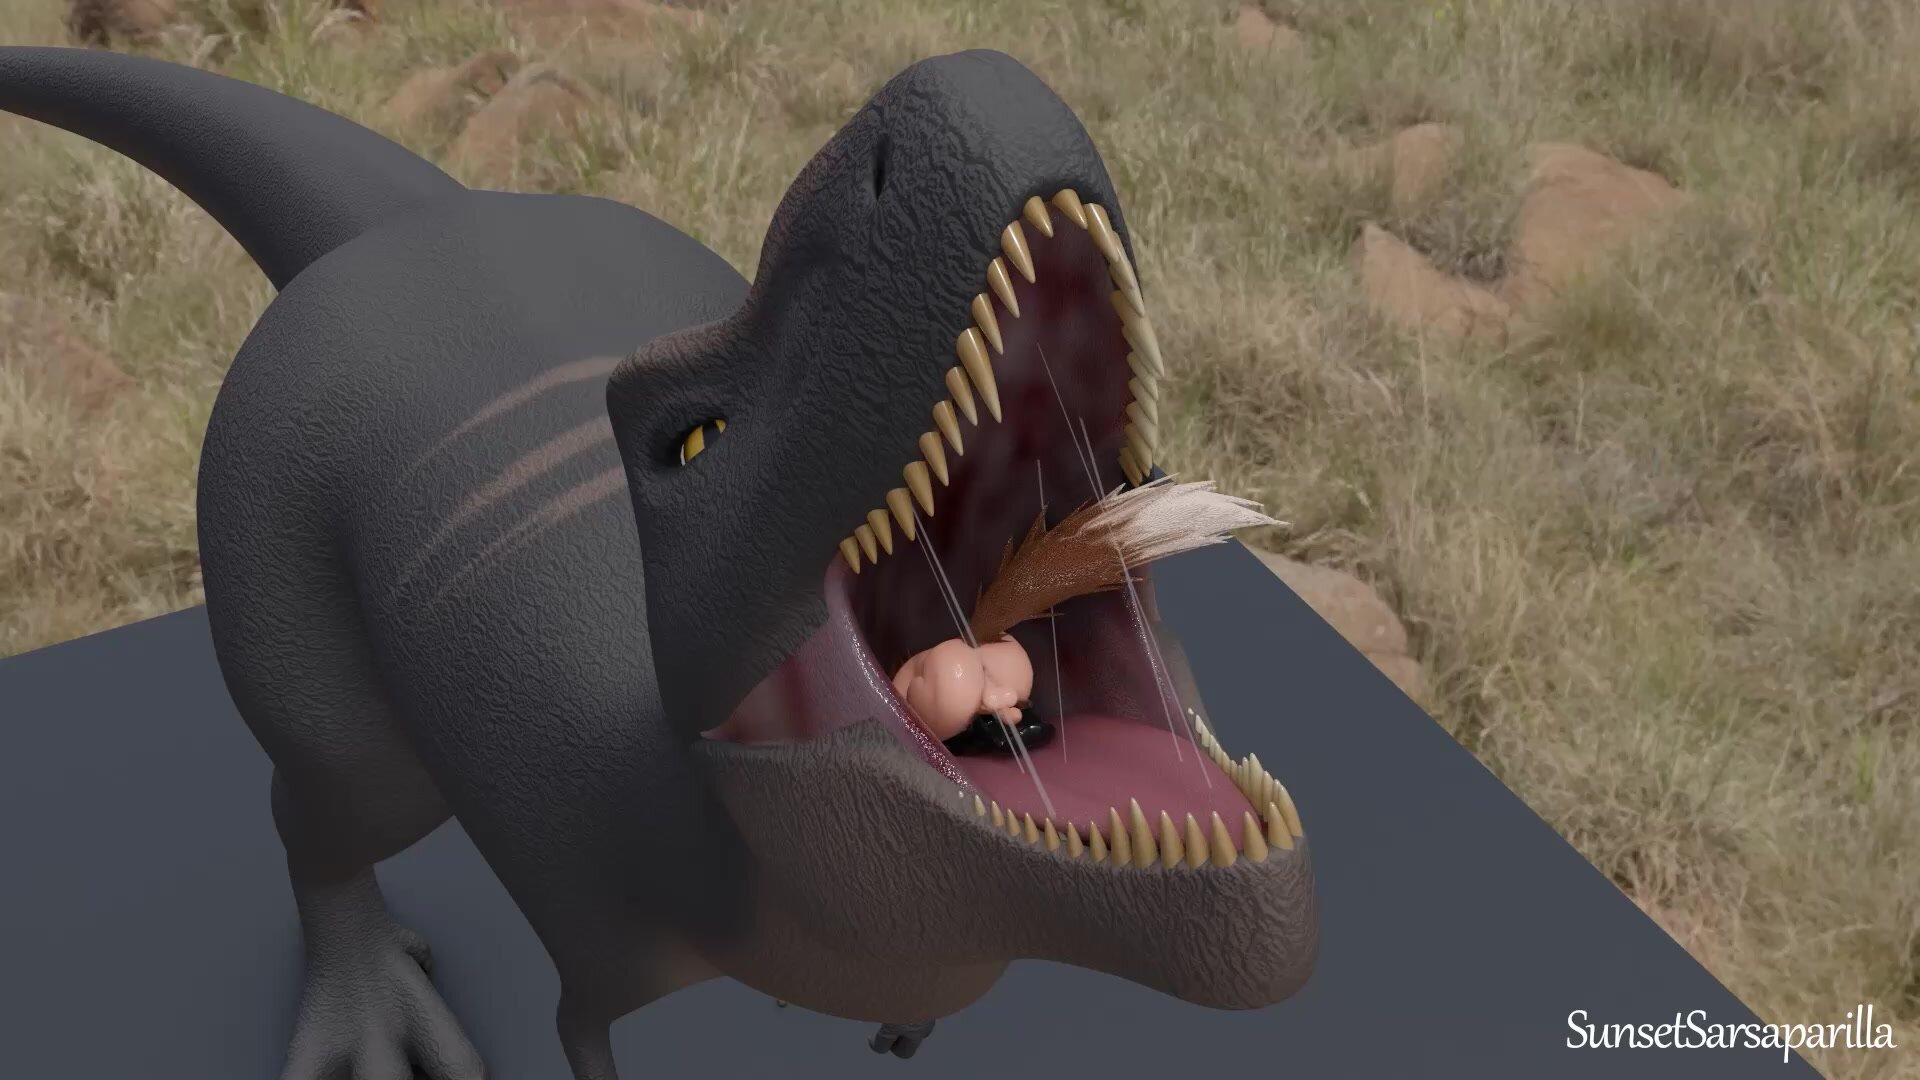 Fox guy gets eaten by a t-rex